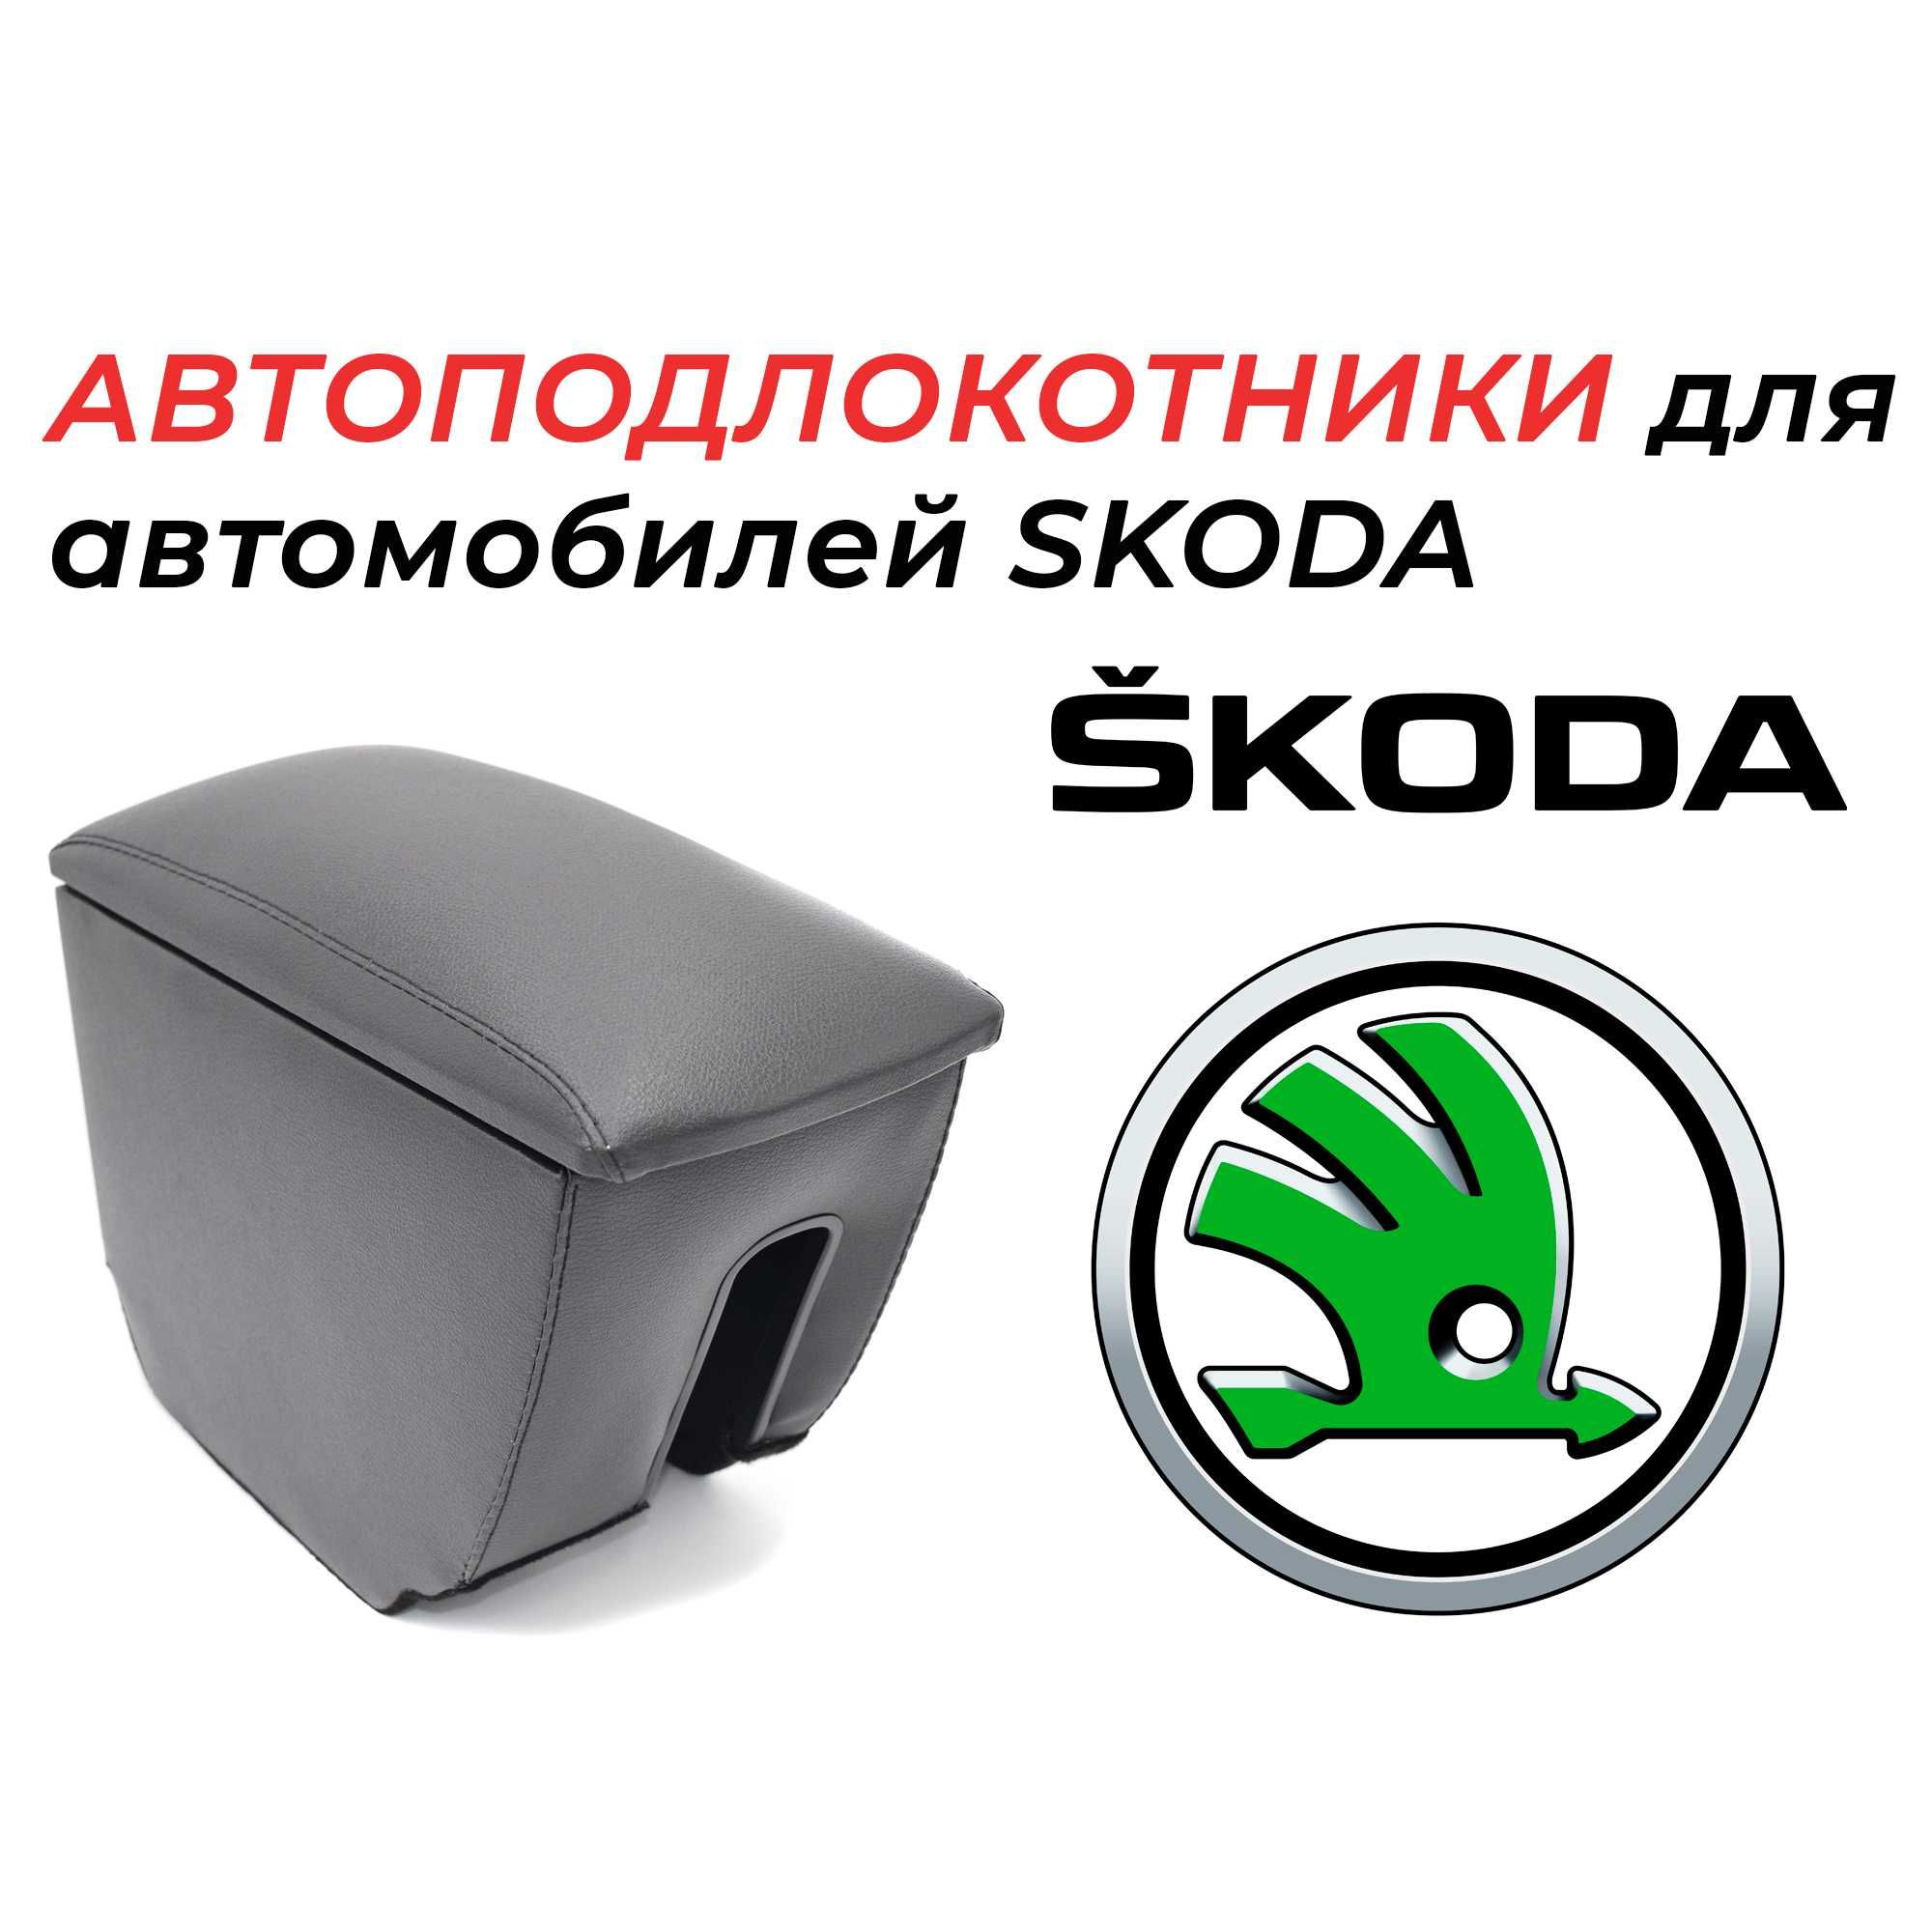 Подлокотники для автомобилей Skoda производства России